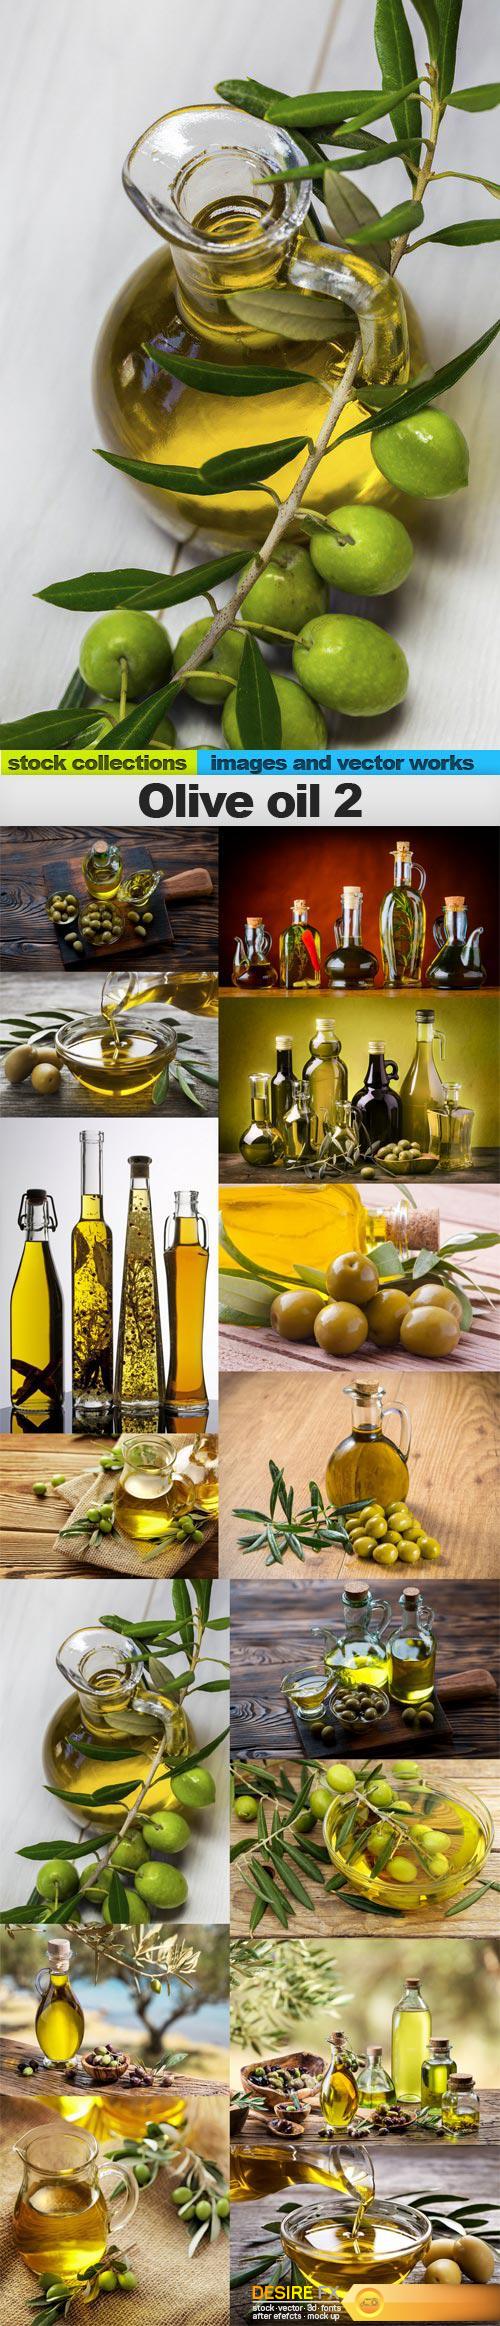 Olive oil 2, 15 x UHQ JPEG